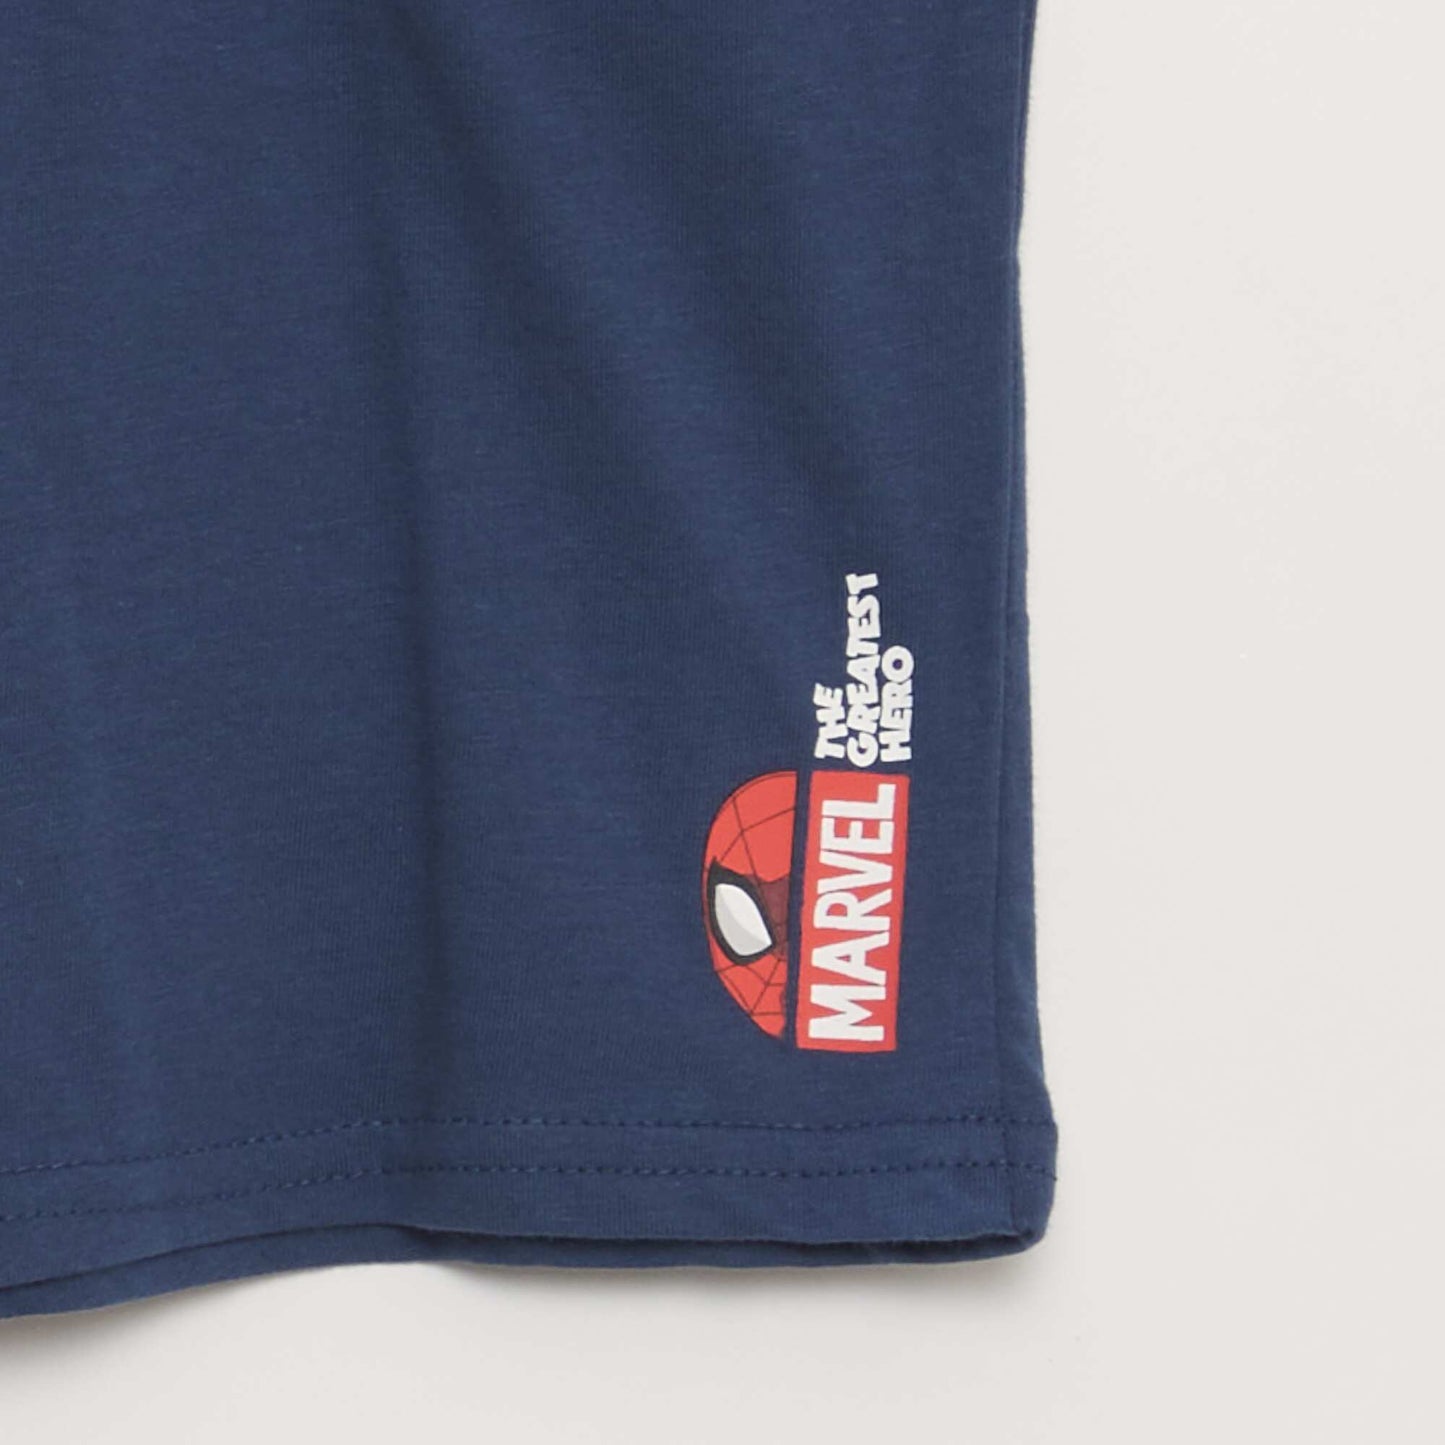 Short pyjamas - 'Spider Man' print - 2-piece set BLUE